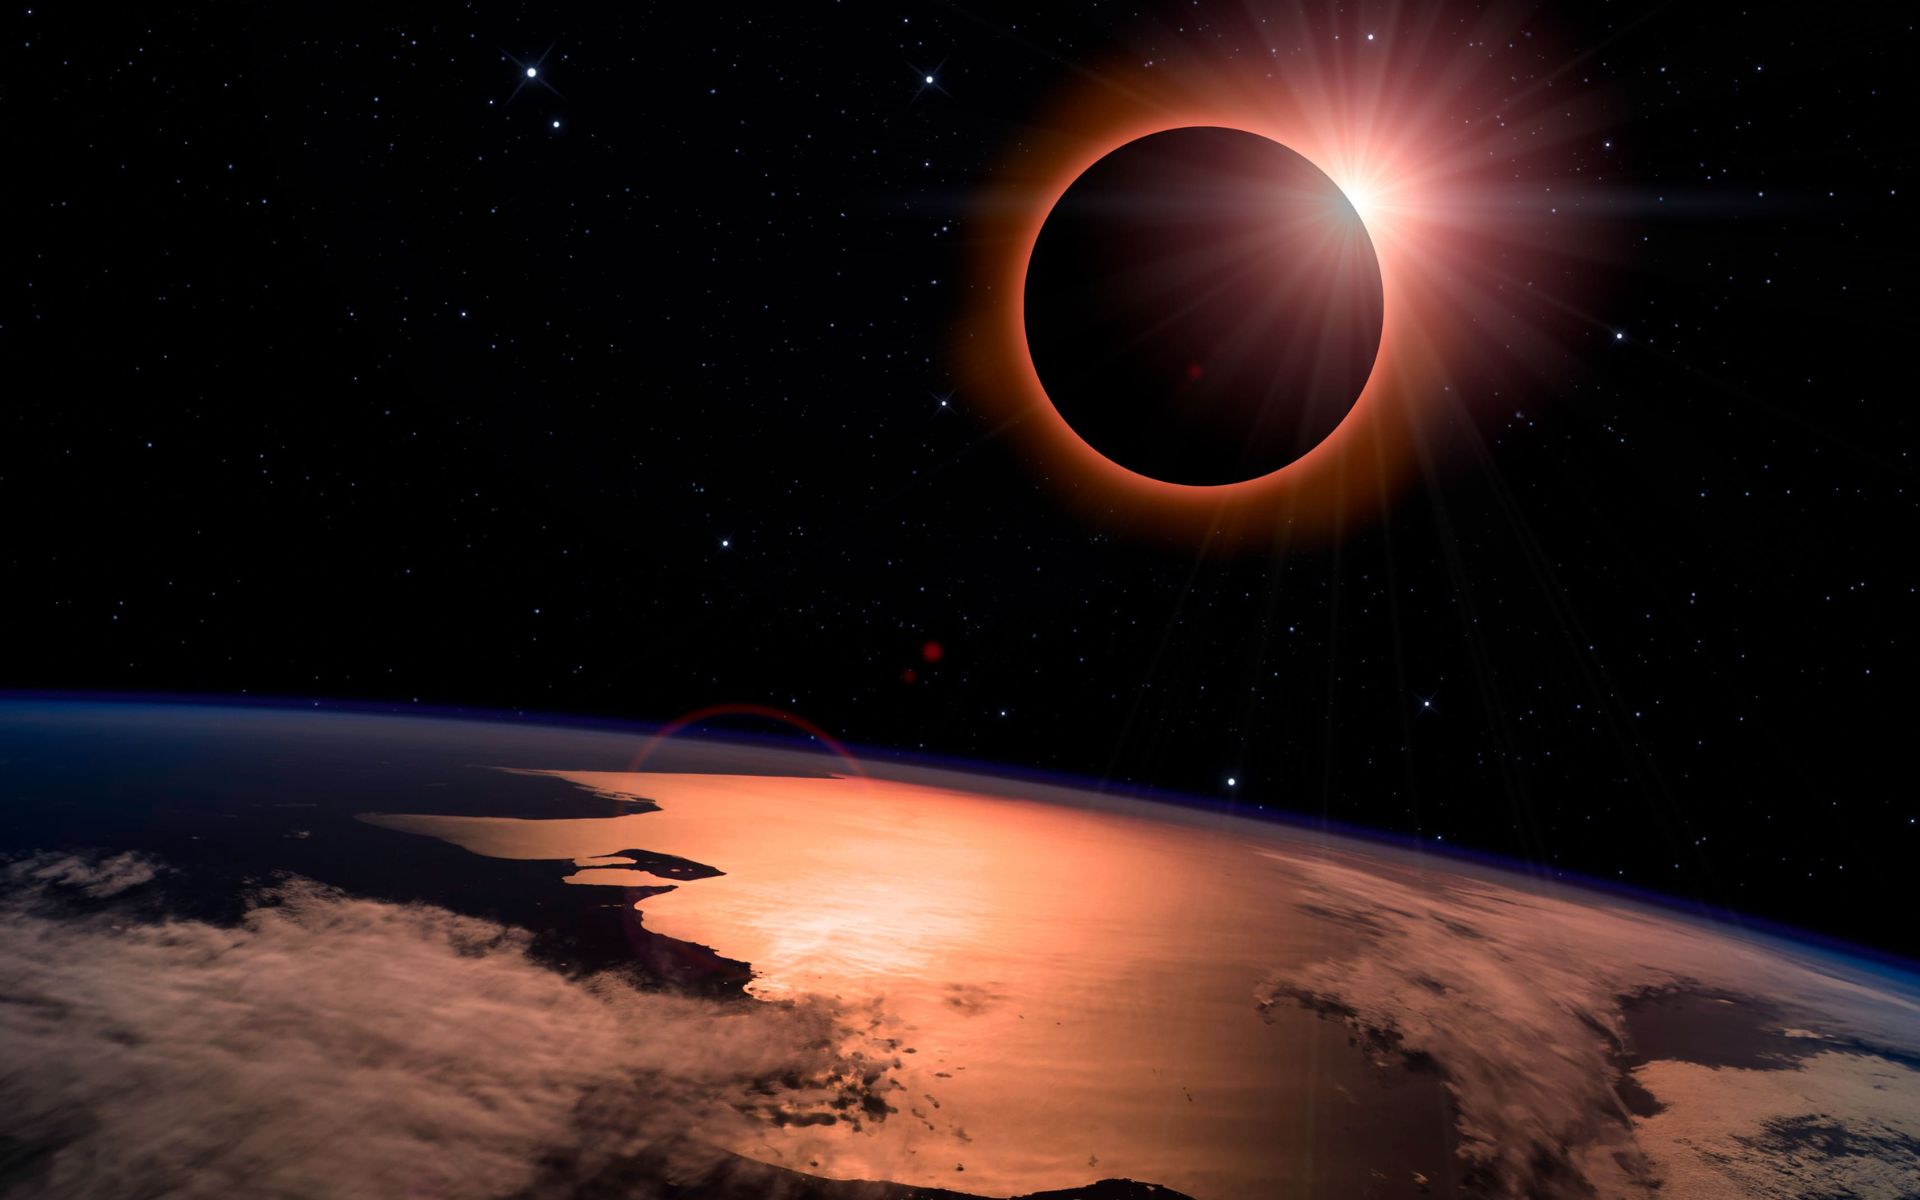 Como Ã© o eclipse solar visto da Lua?